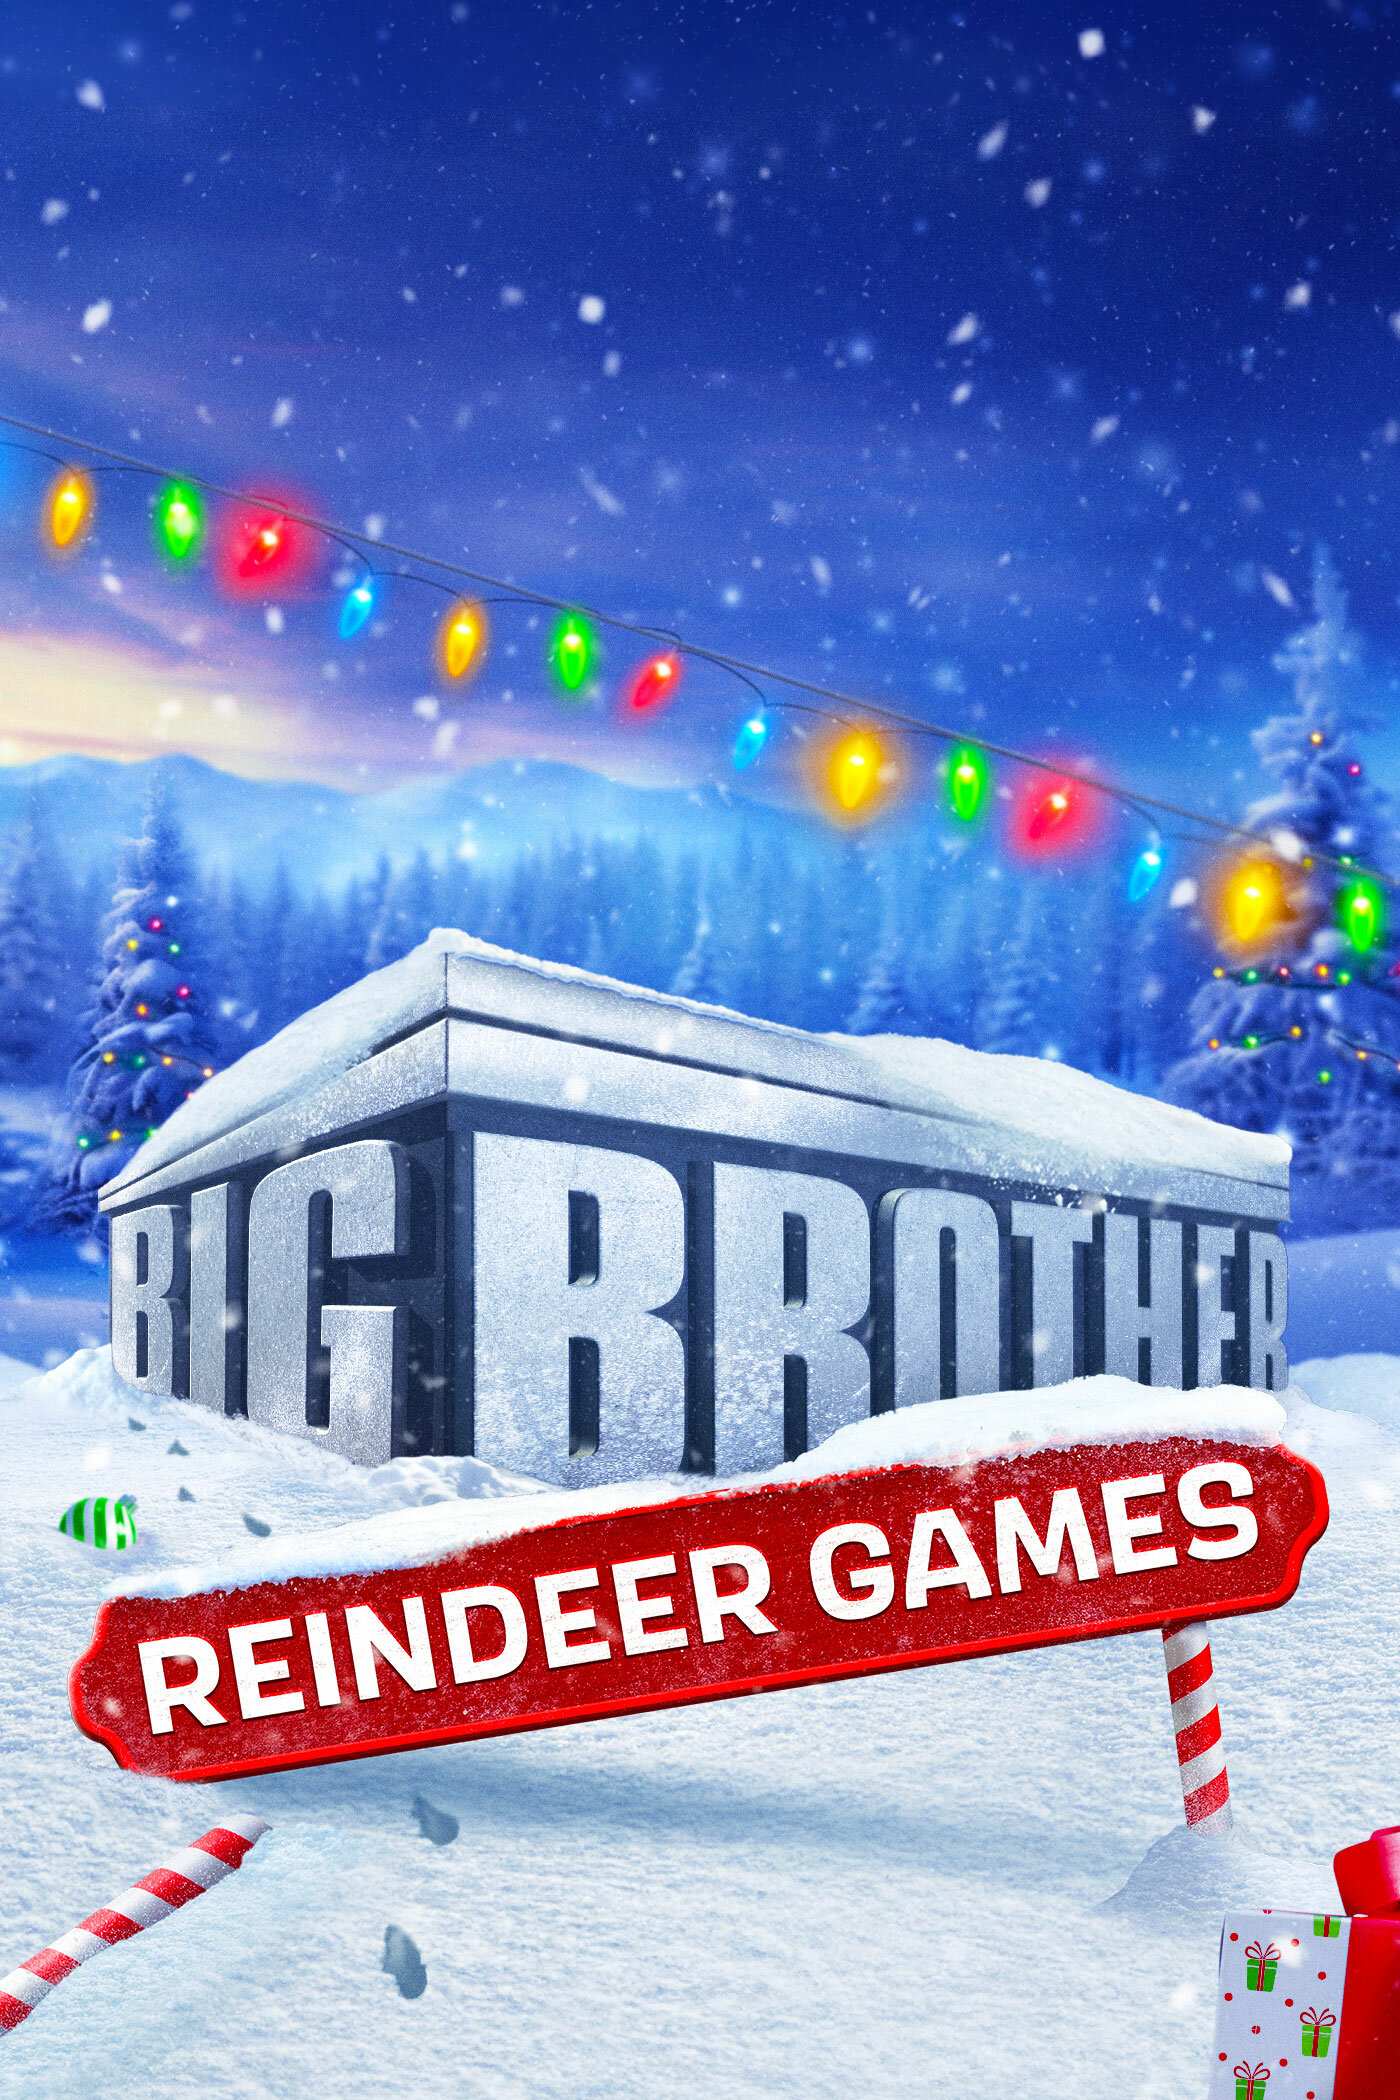 Big Brother Reindeer Games ne zaman